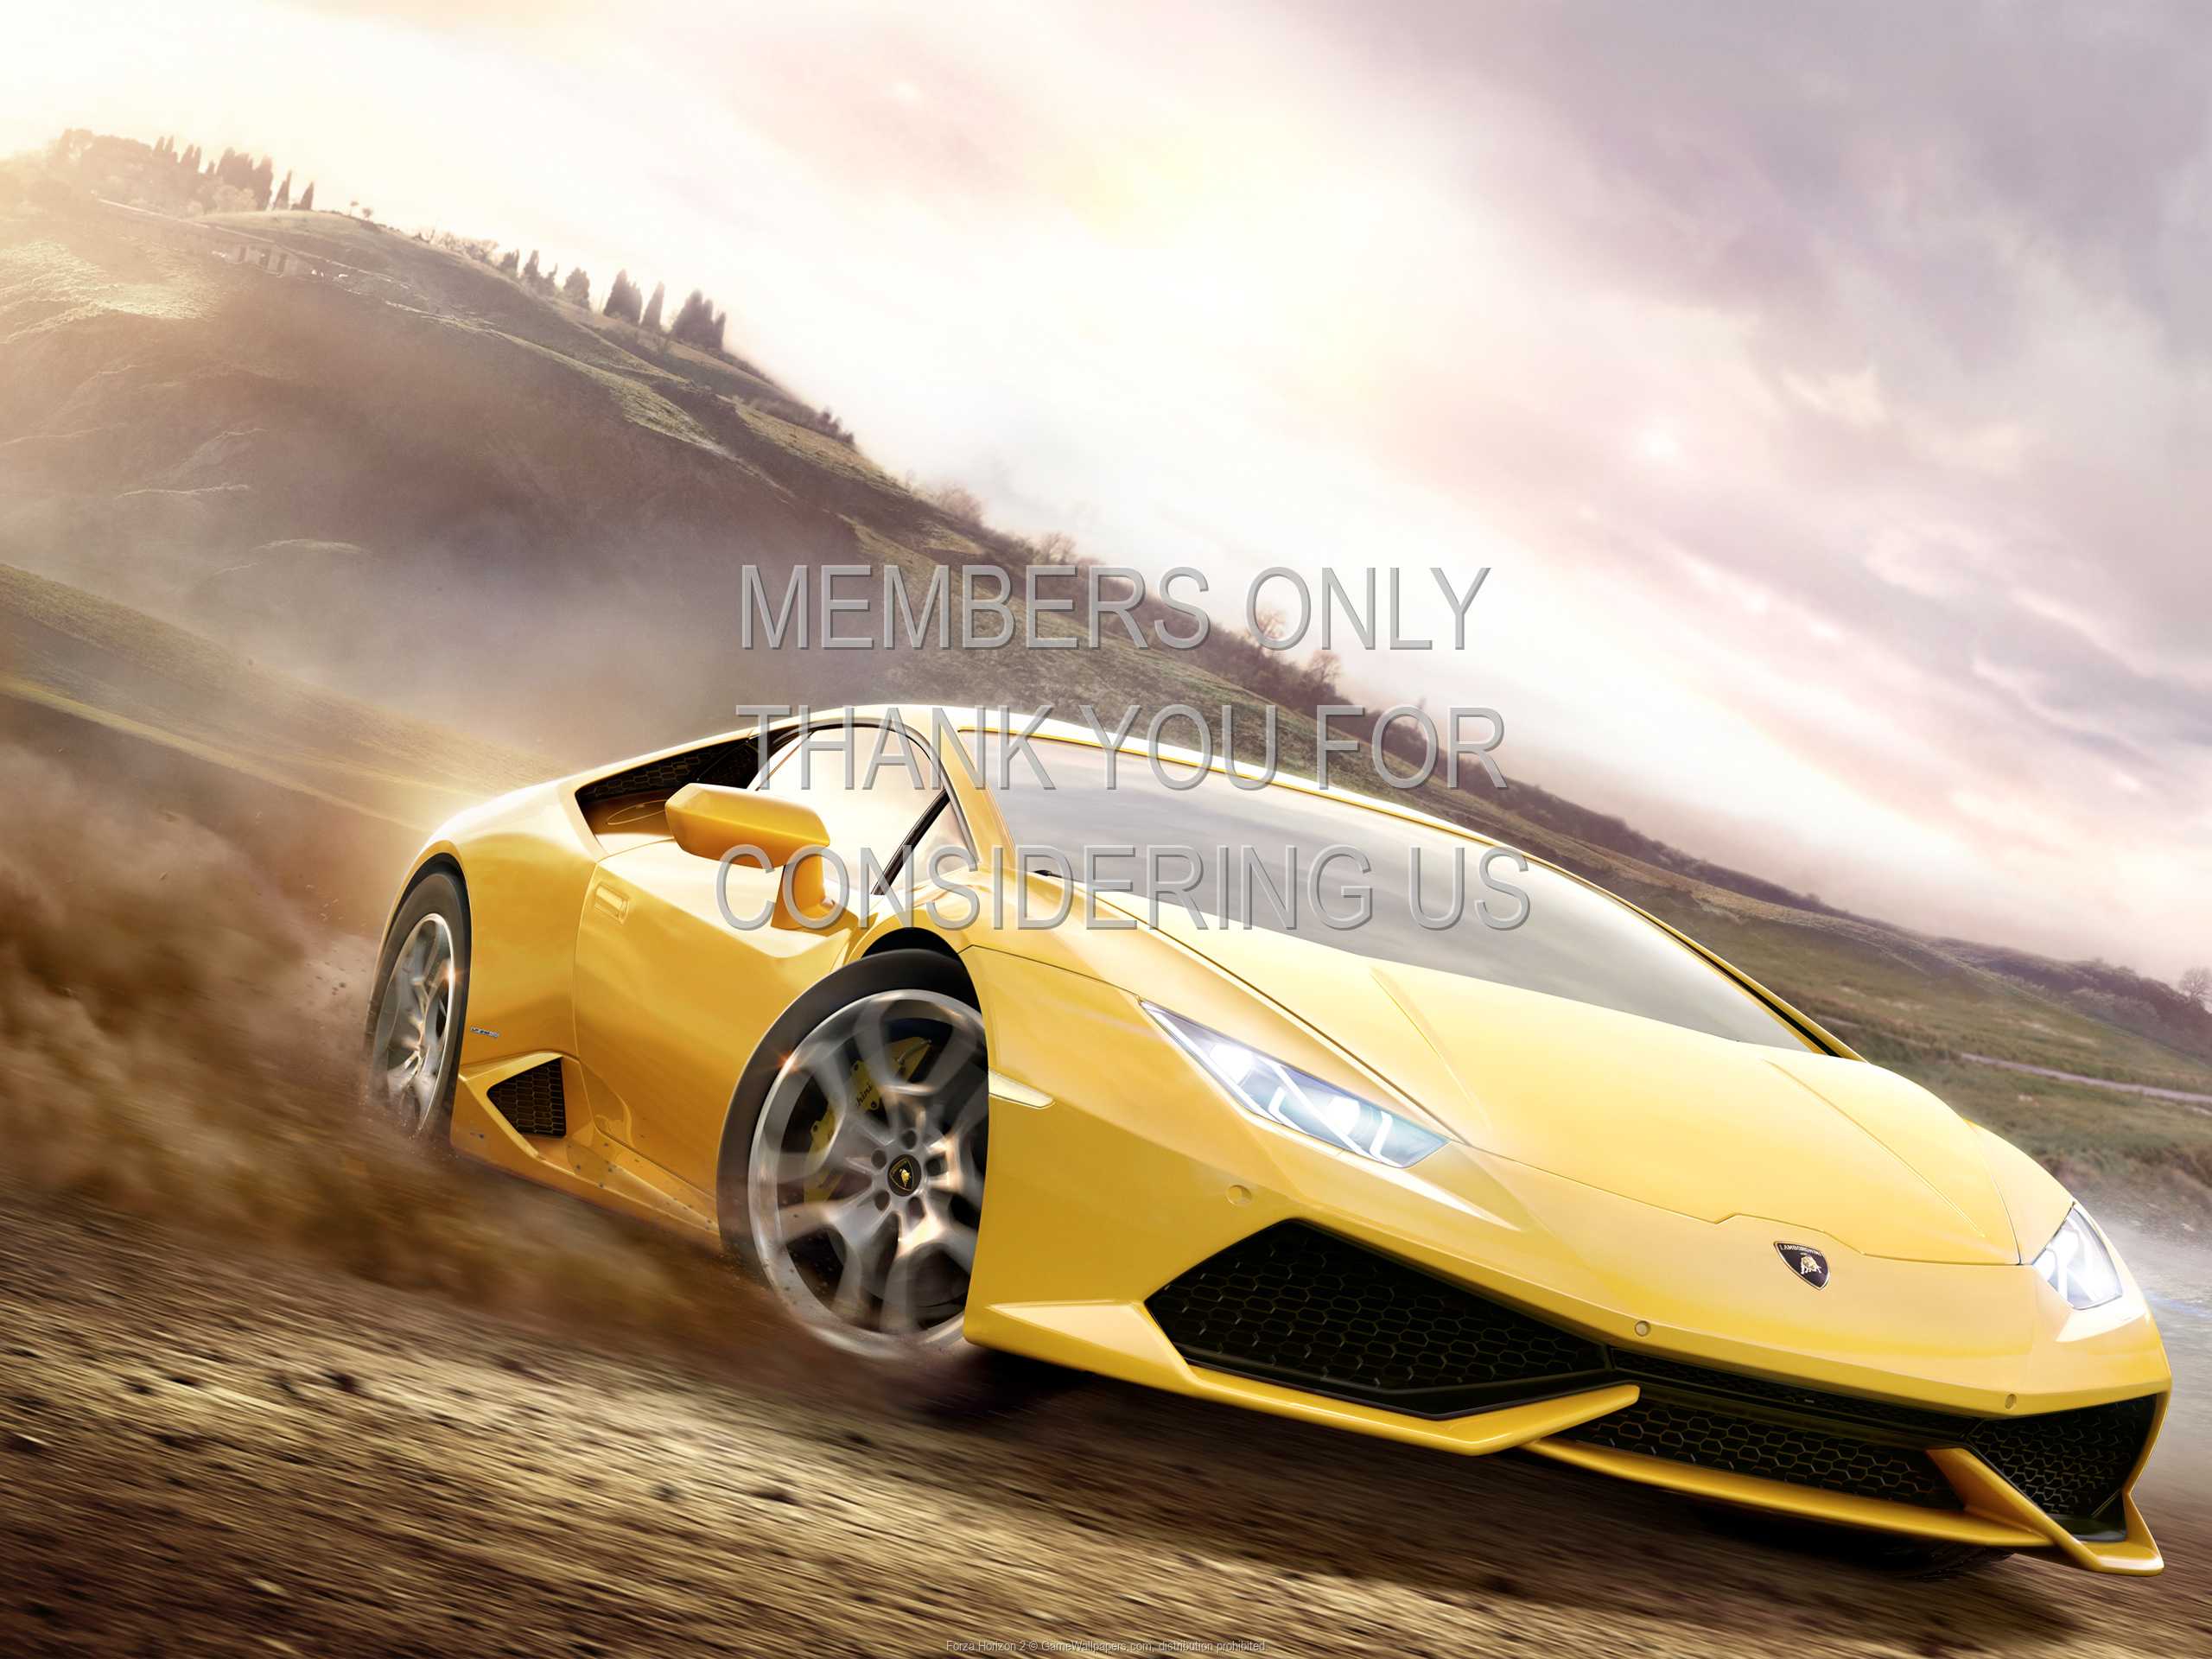 Forza Horizon 2 1080p%20Horizontal Mobile wallpaper or background 01